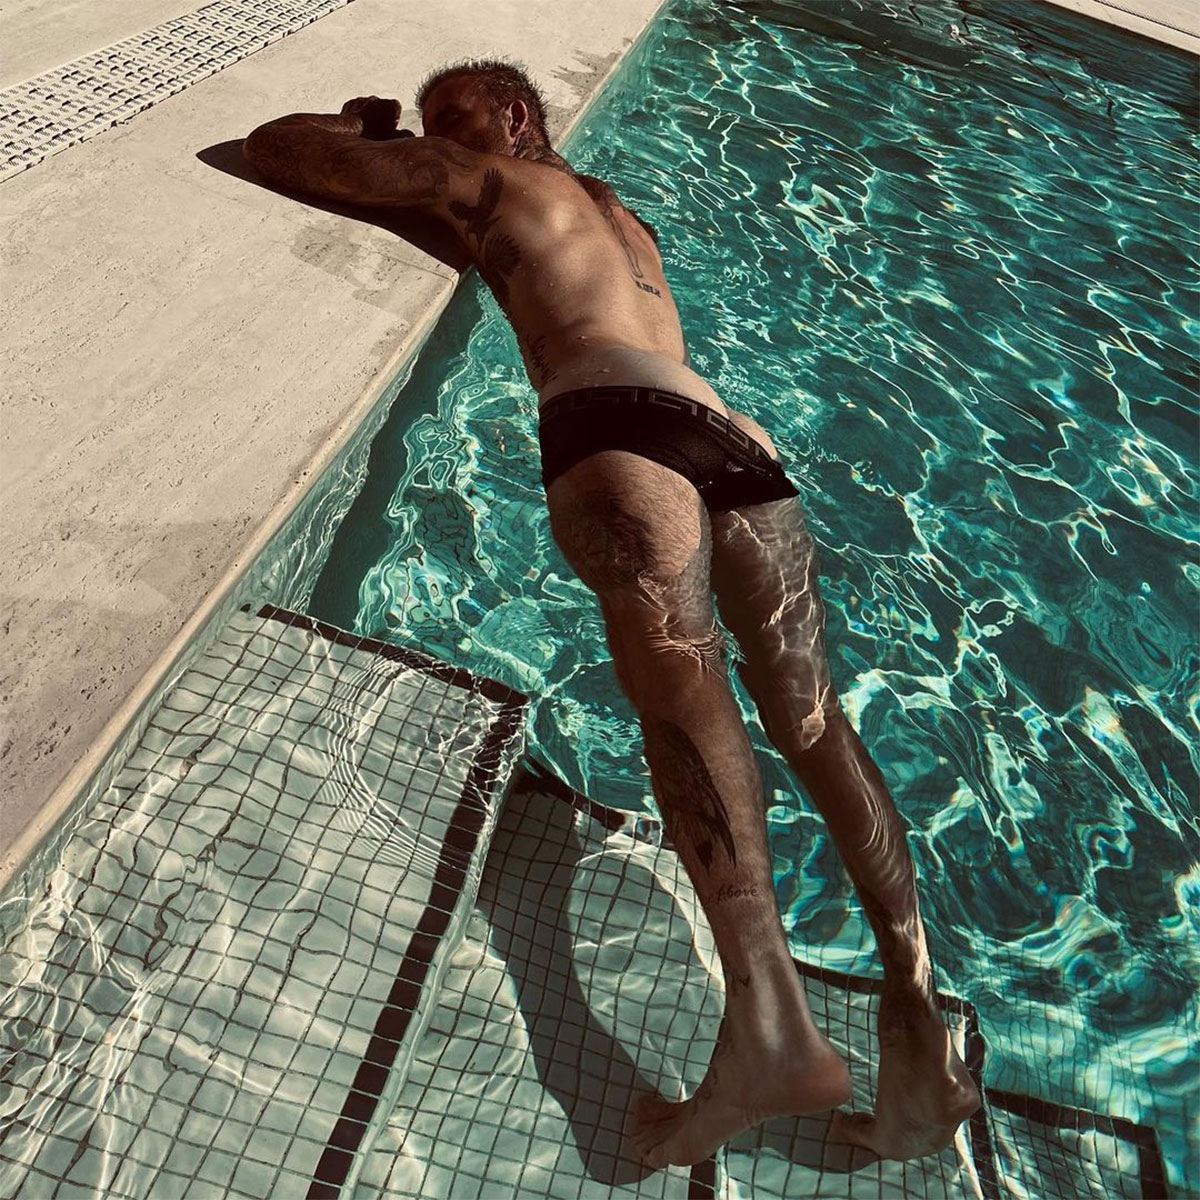 Victoria Beckham Shares Cheeky Photo of David Beckham Bare Butt